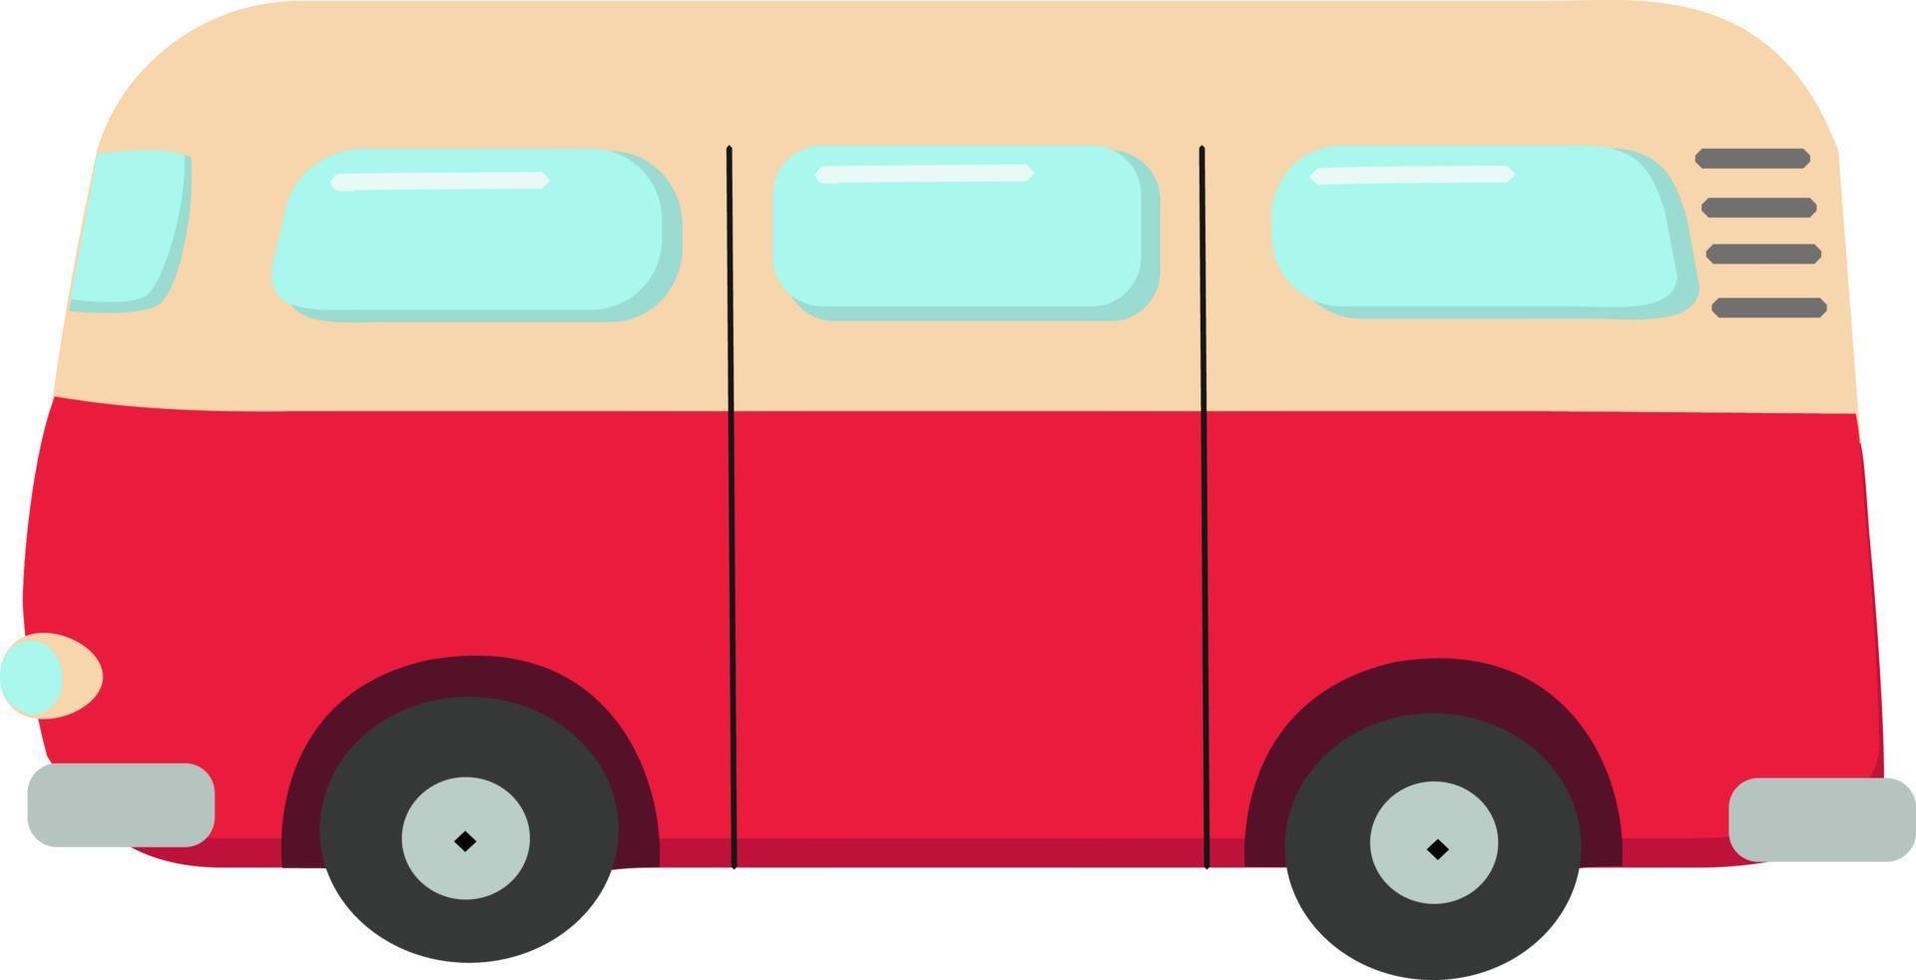 röd mini buss, illustration, vektor på vit bakgrund.